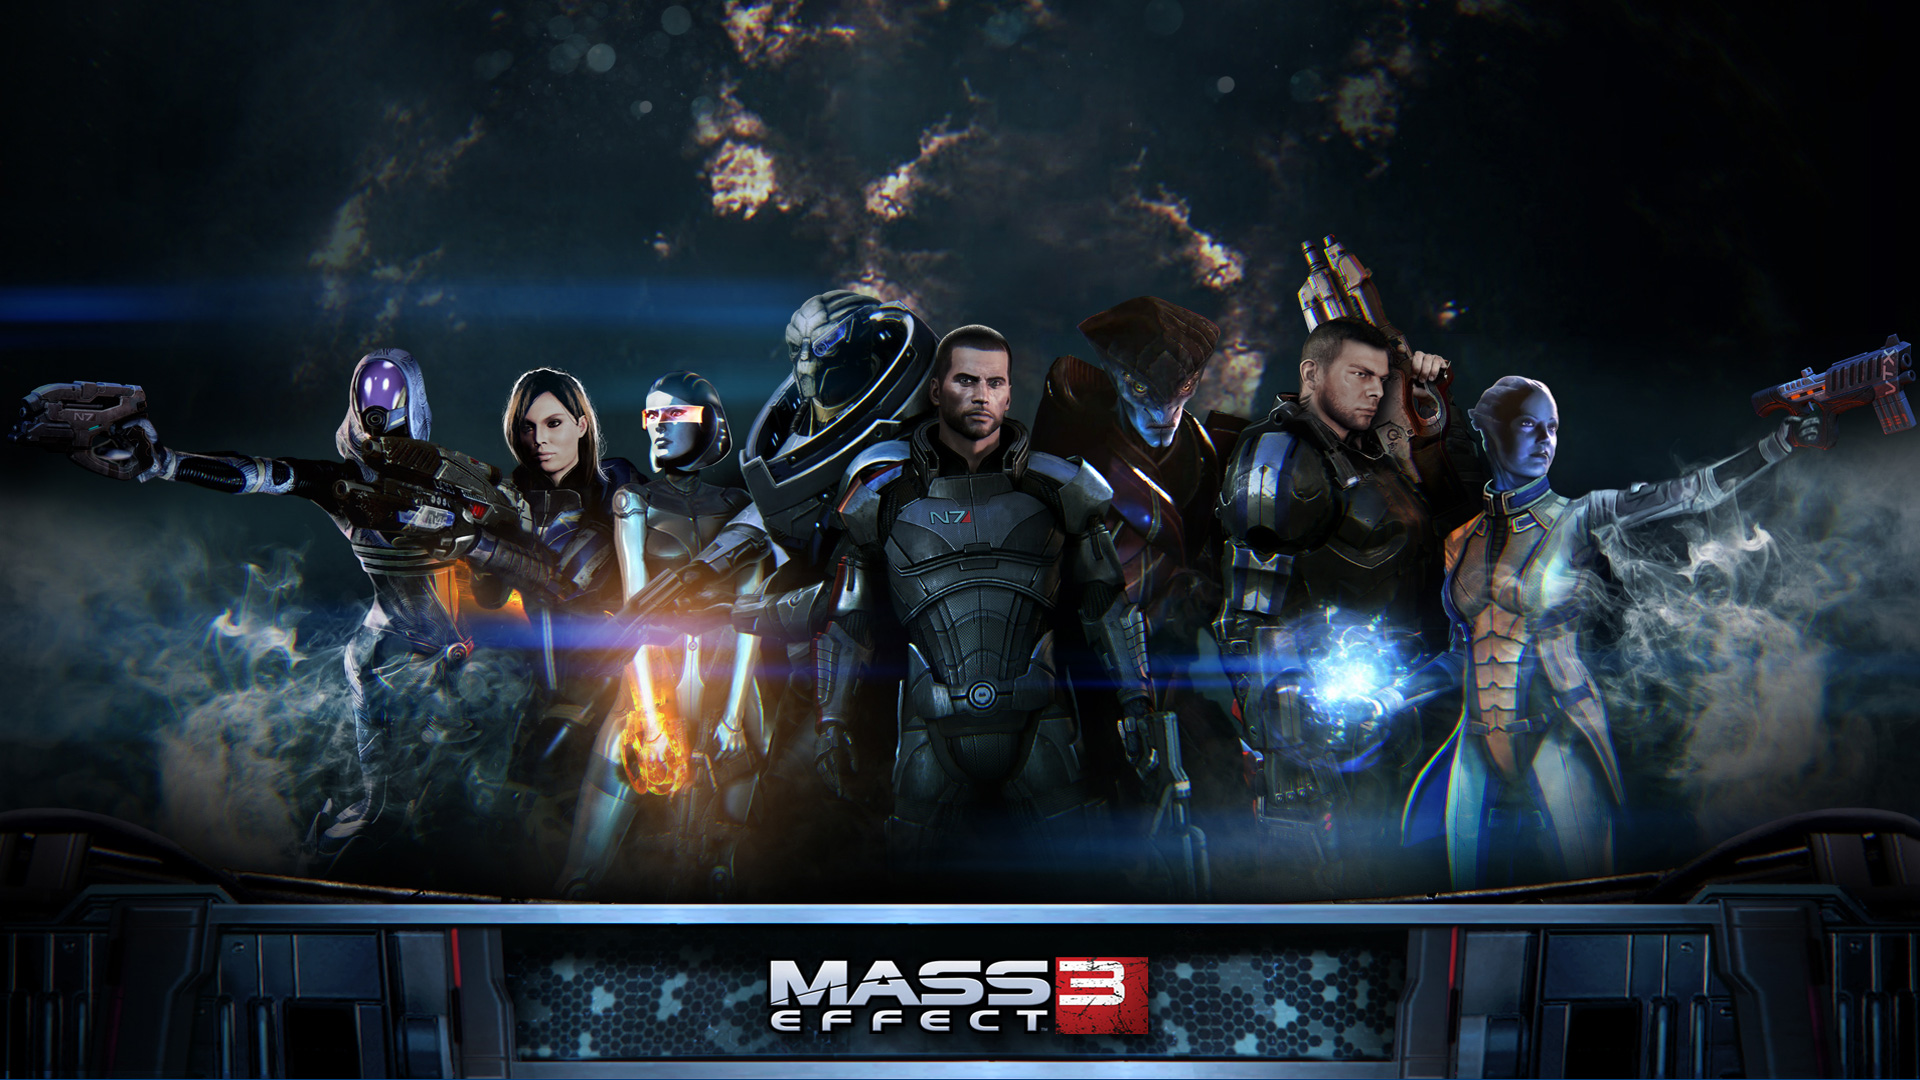 Mass Effect Wallpaper In